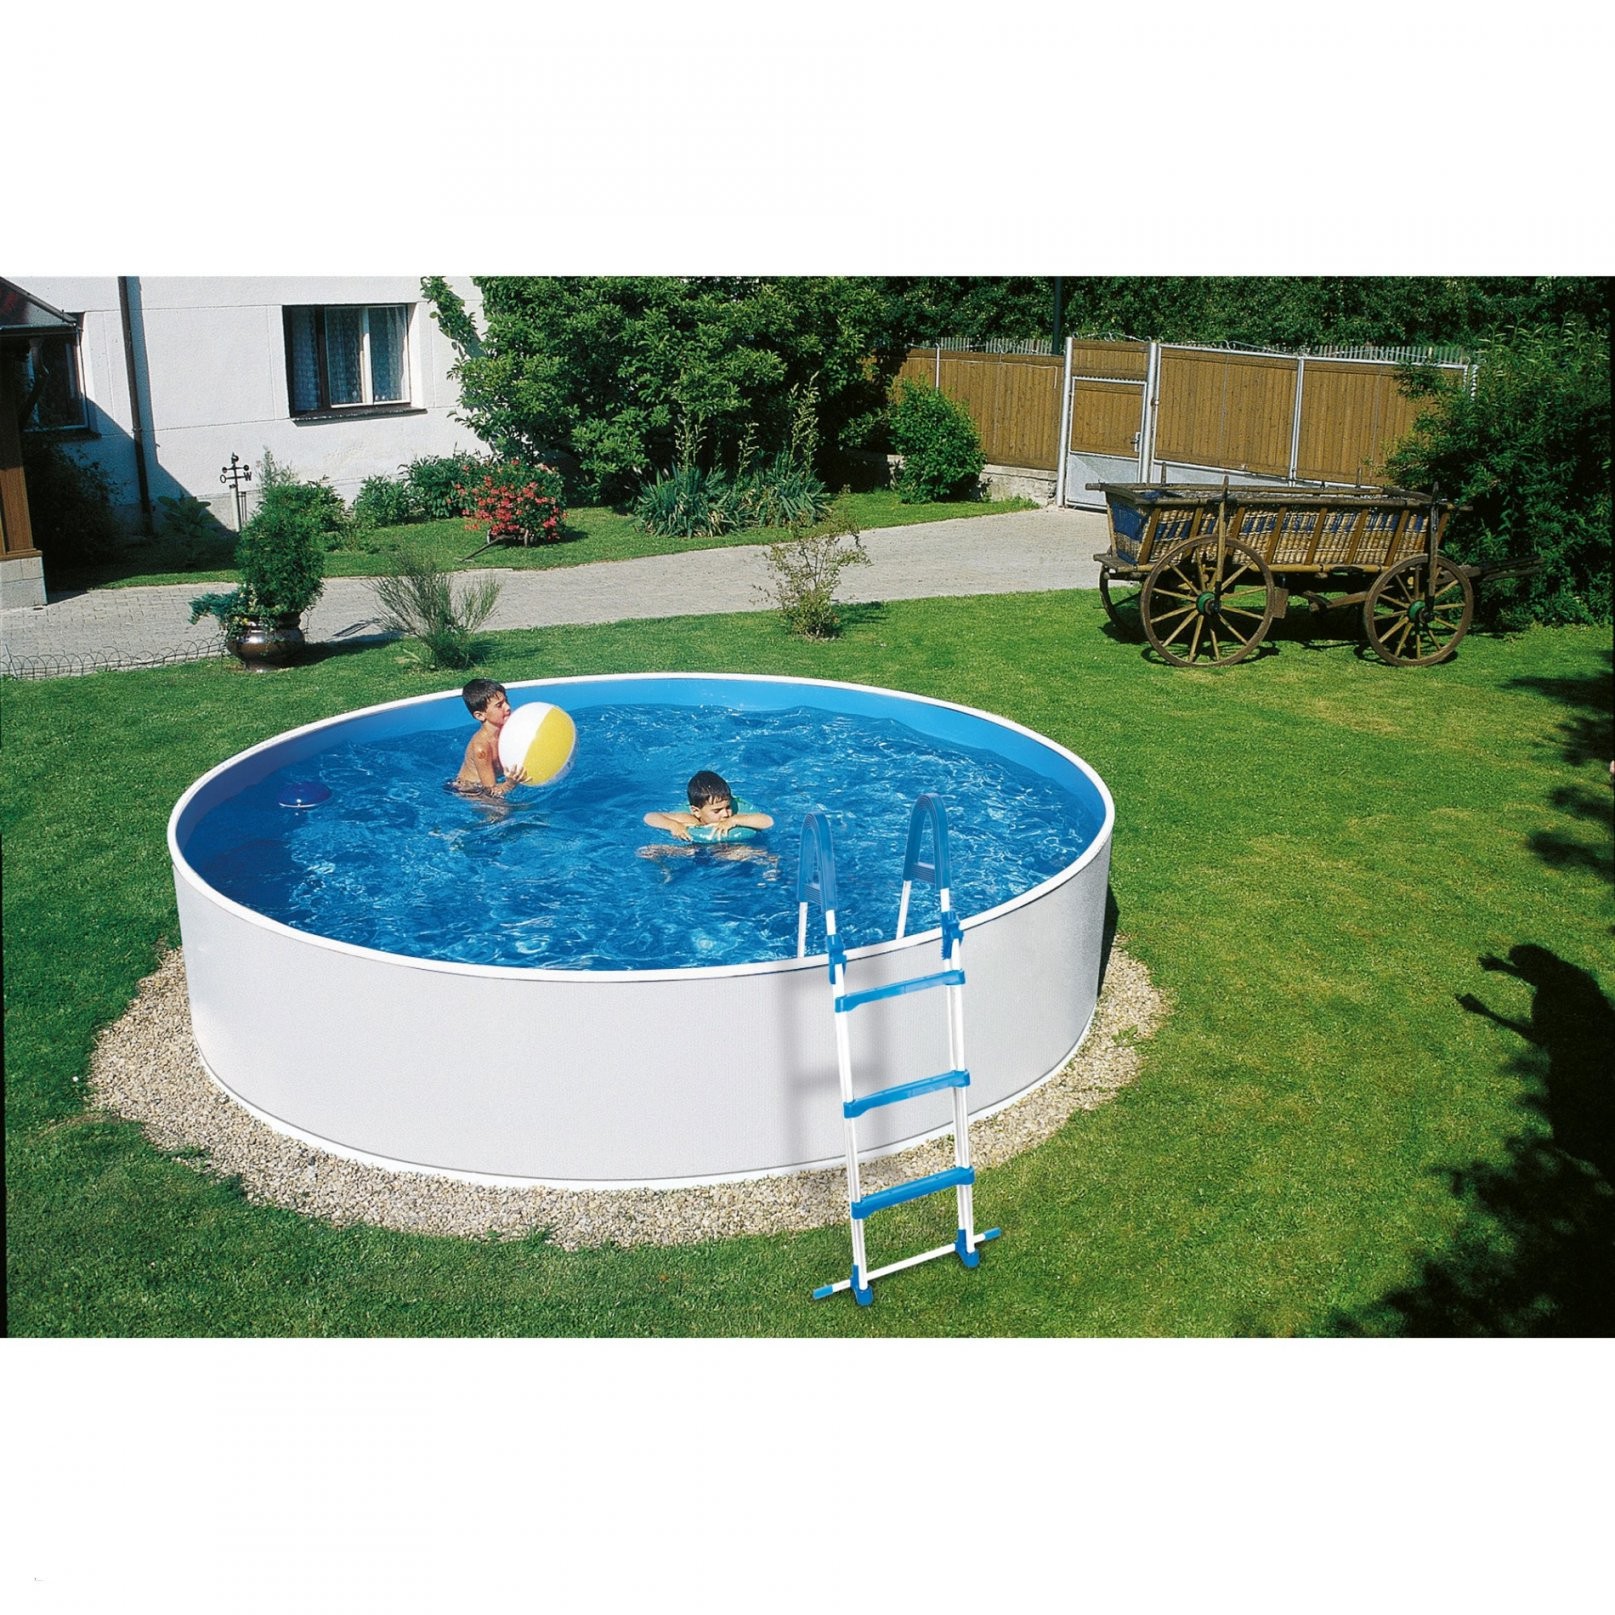 Pool Im Garten Selber Bauen Für Pool Terrasse Holz Inspirierend Pool von Pool Terrasse Selber Bauen Bild